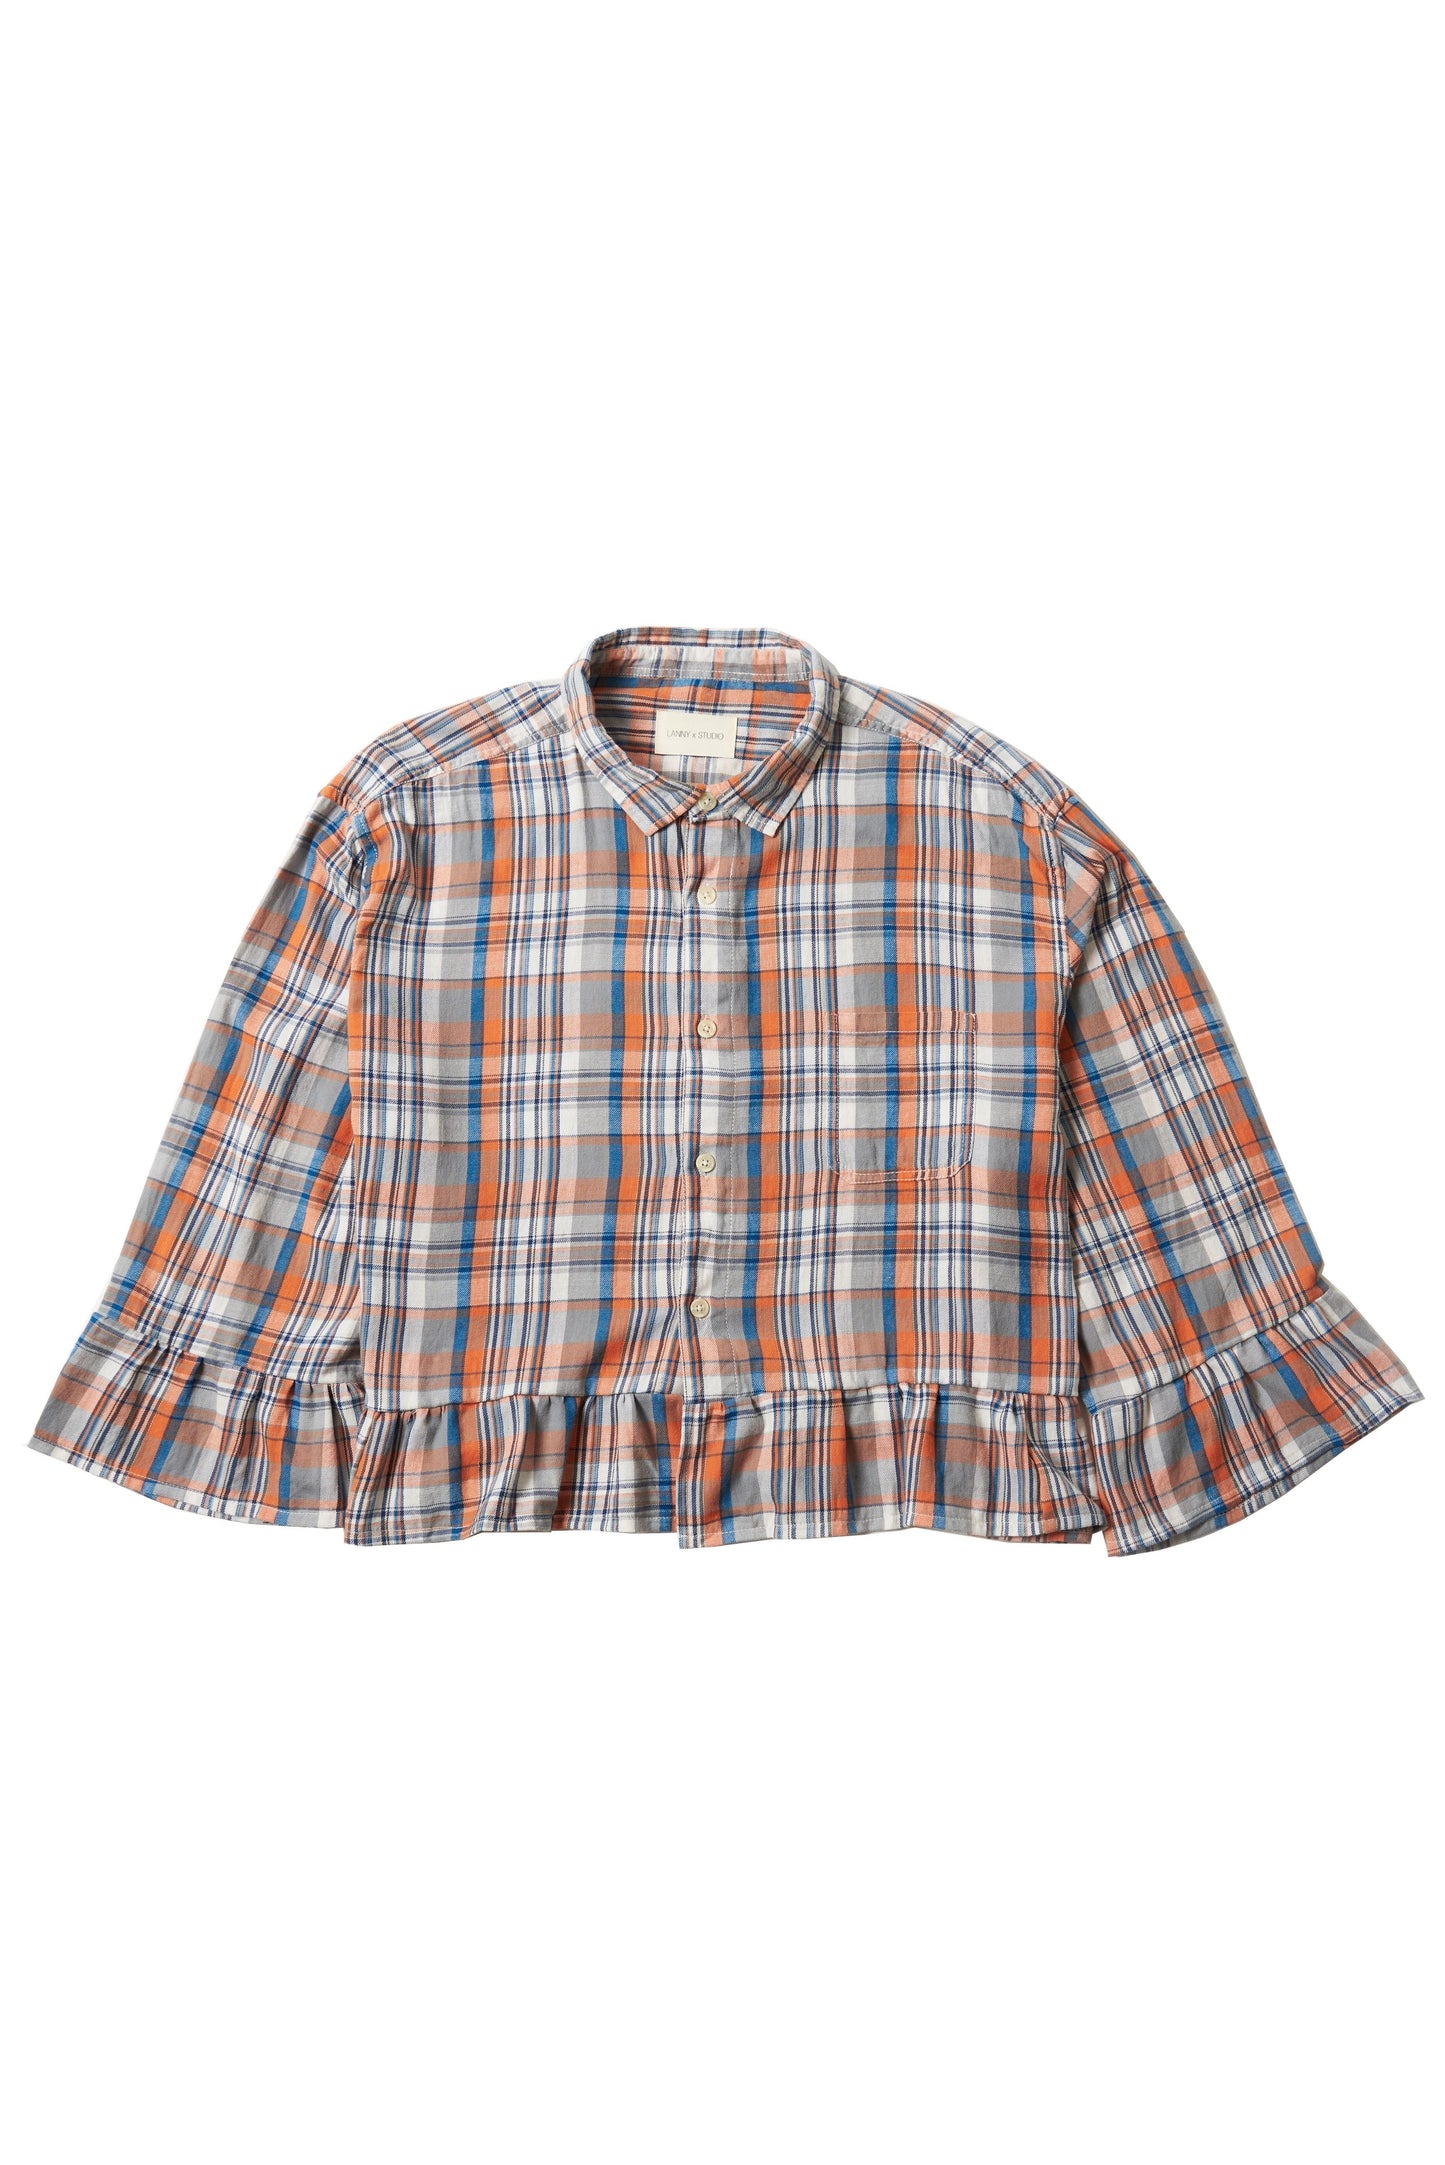 Orange & Grey Ruffled Check Shirt